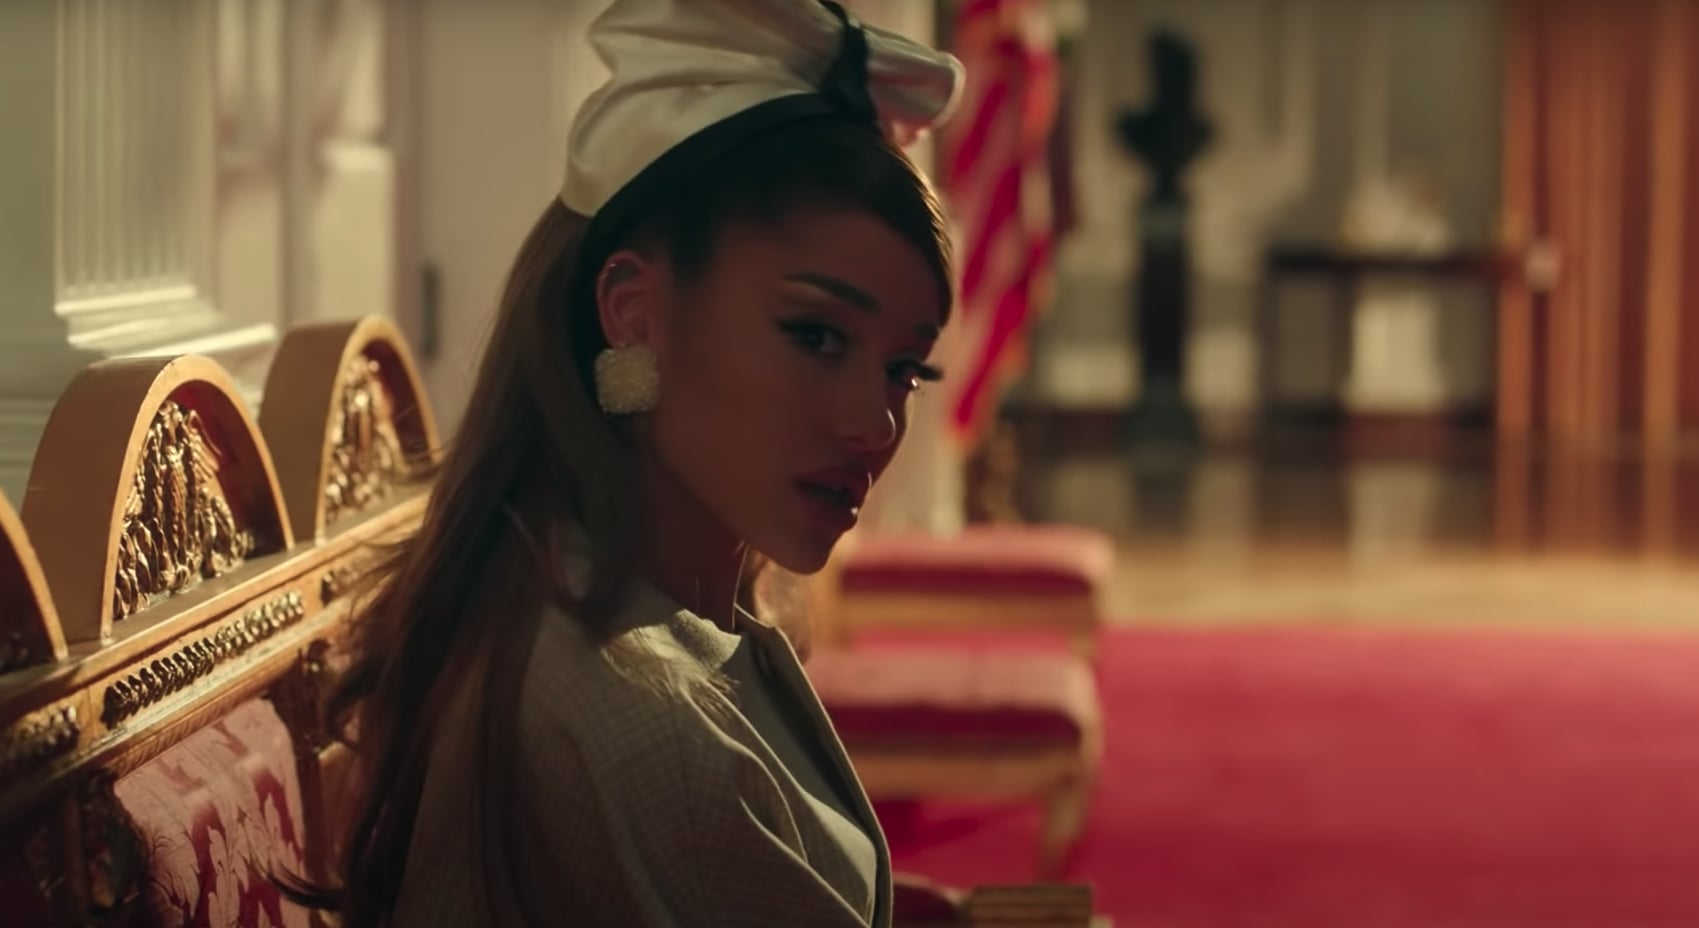 'Bóc giá' các item thời trang nghìn USD trong MV mới của Ariana Grande - Ảnh 11